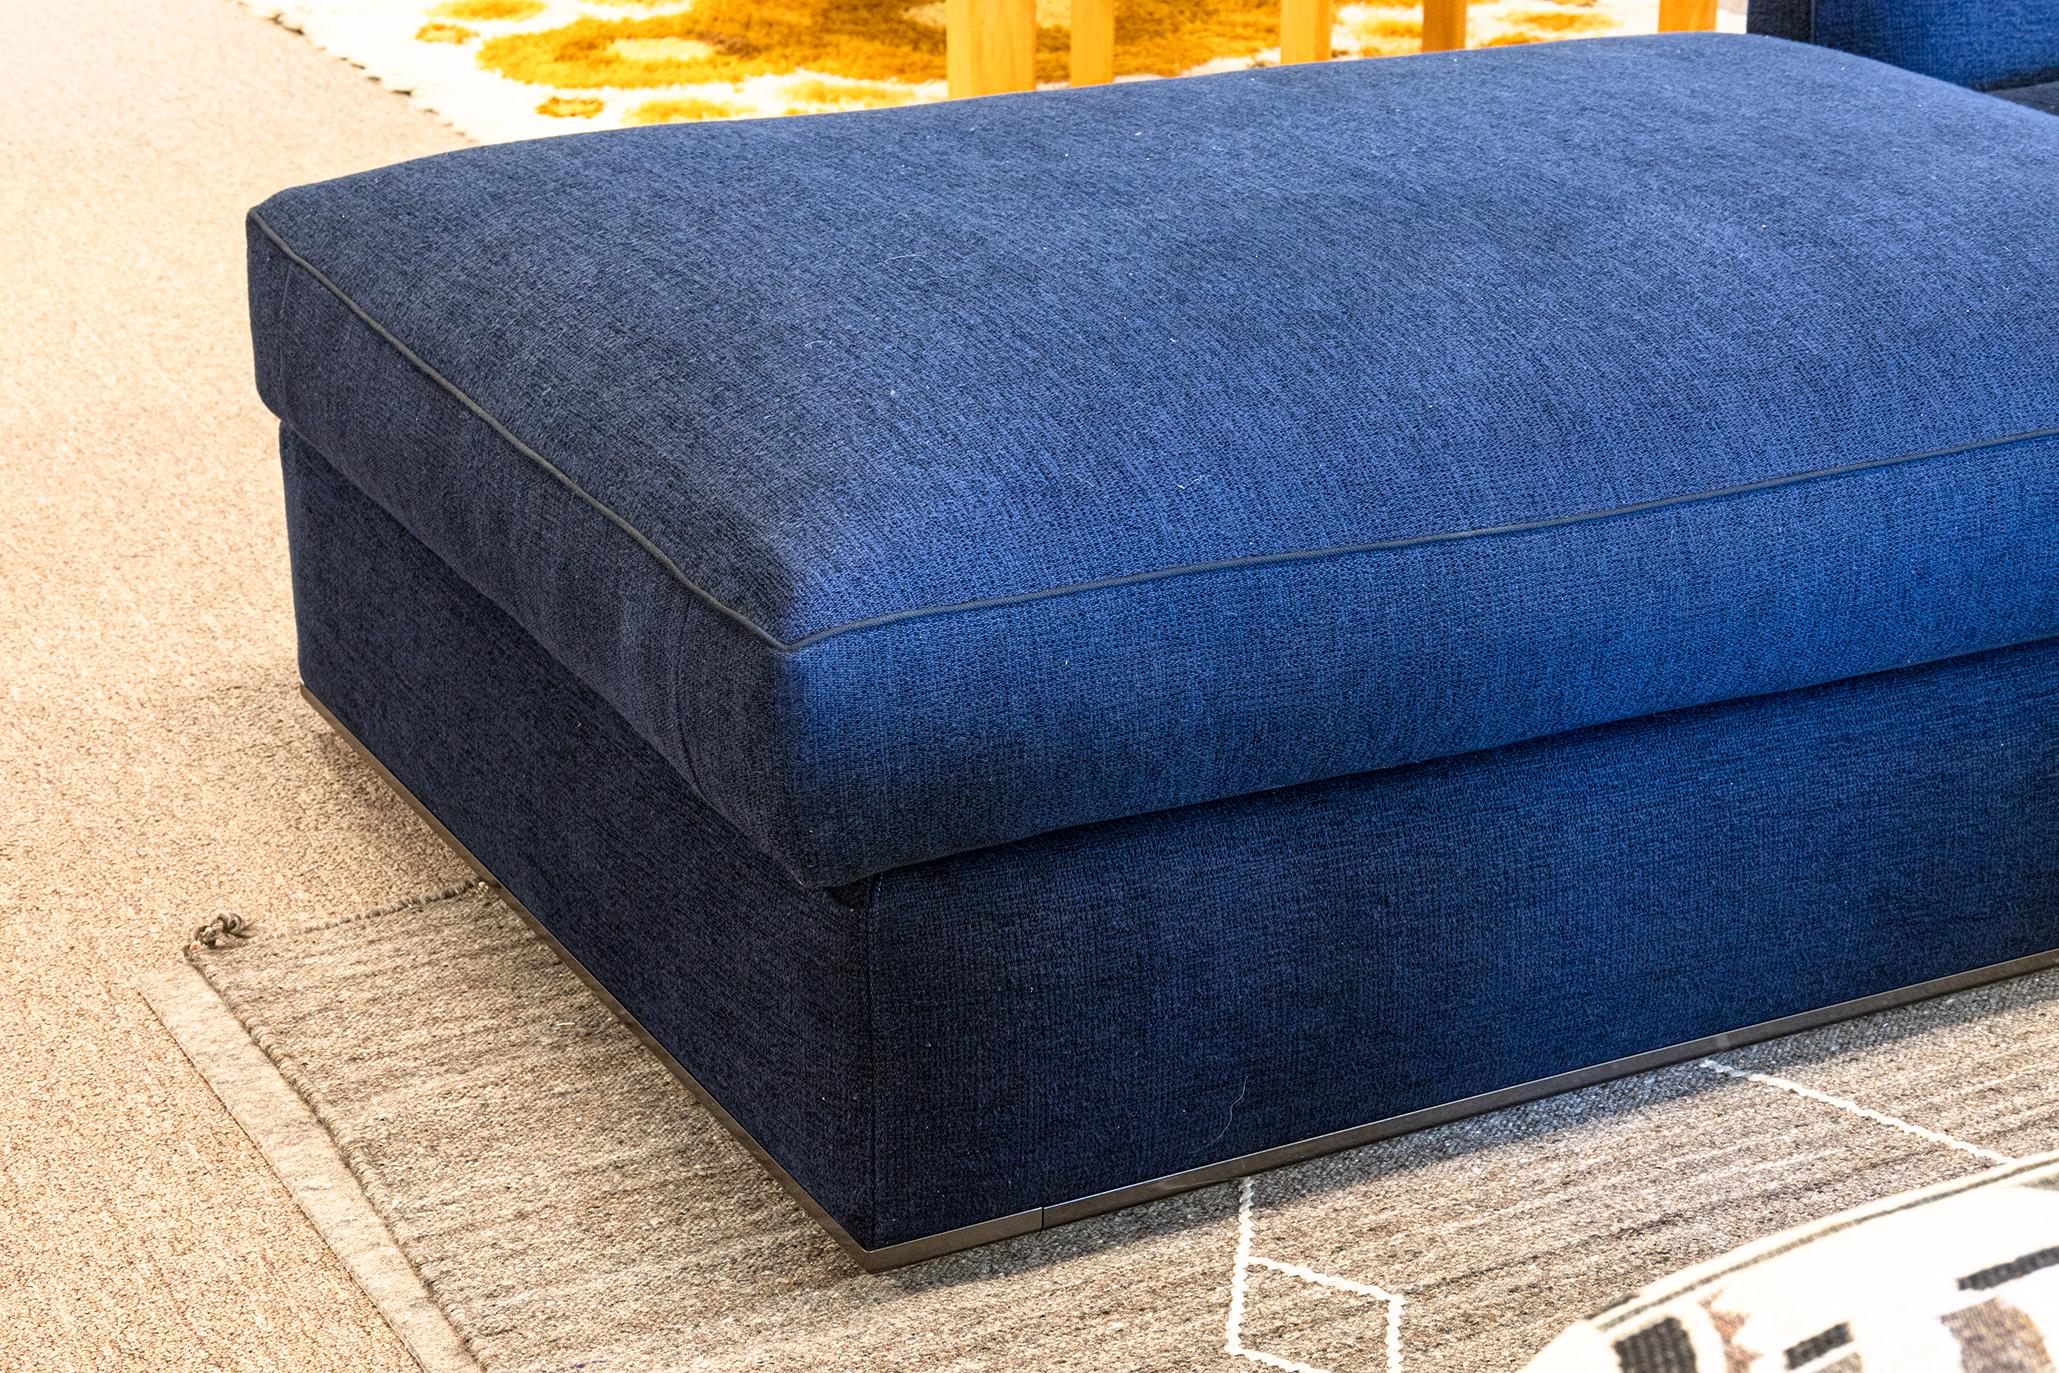 B & B Italia Antonio Citterio Richard Chaise Lounge Sofa in Blue Grade S Fabric For Sale 1